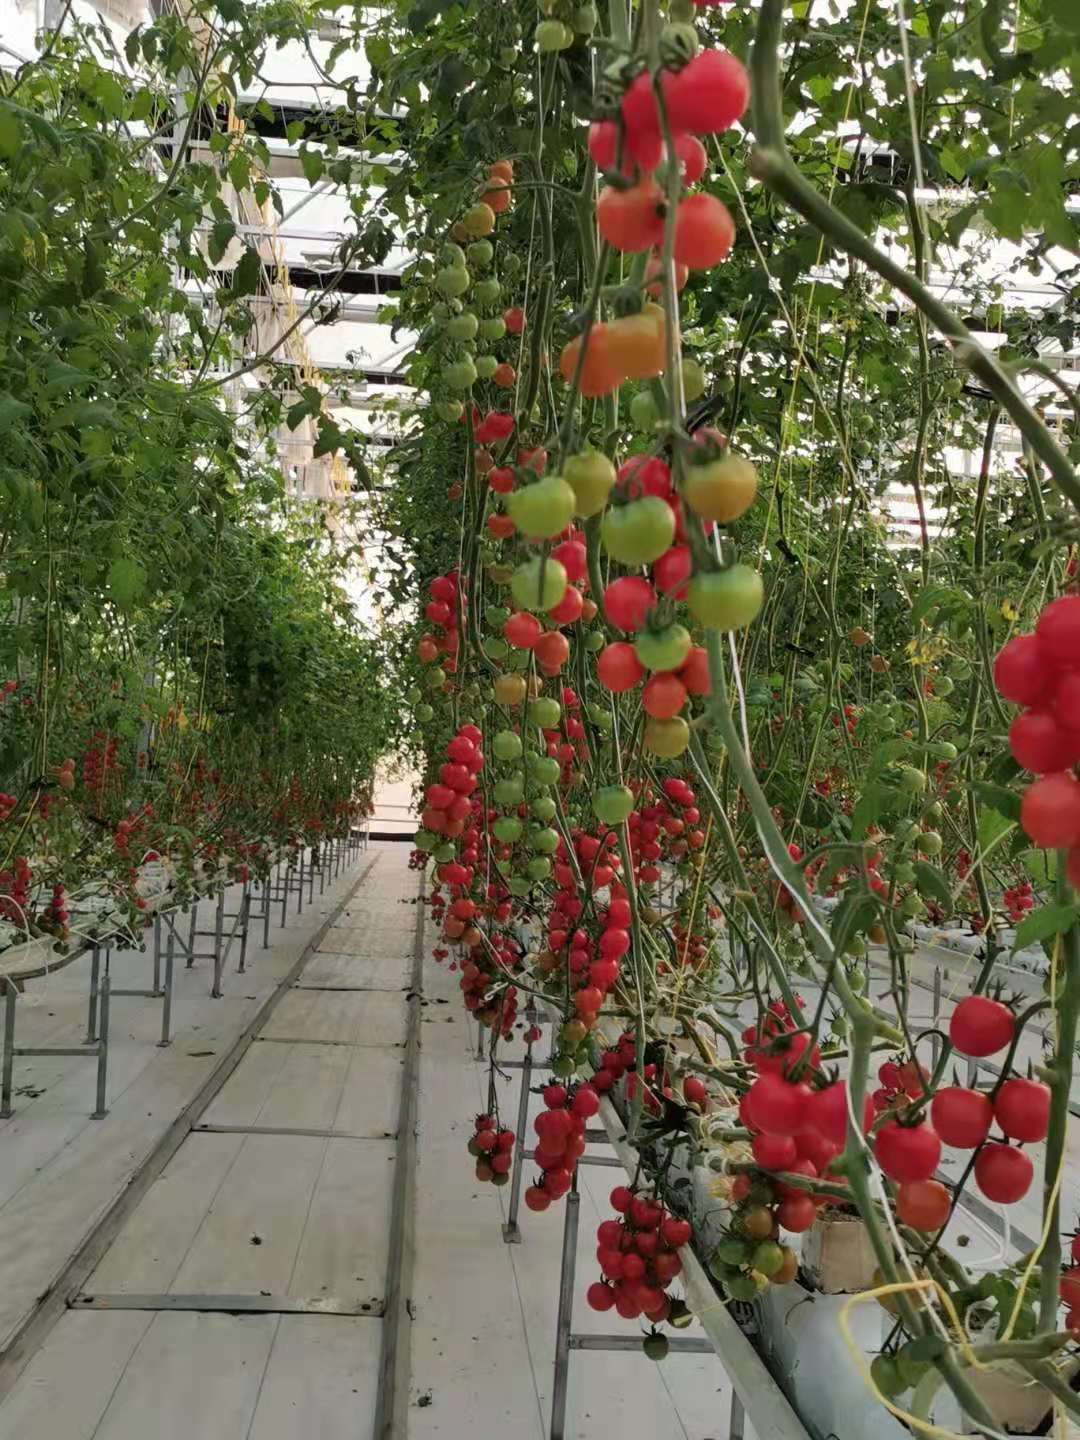 中国以色列农业科技合作园发展高效农业:番茄树上长 蔬菜像鲜花